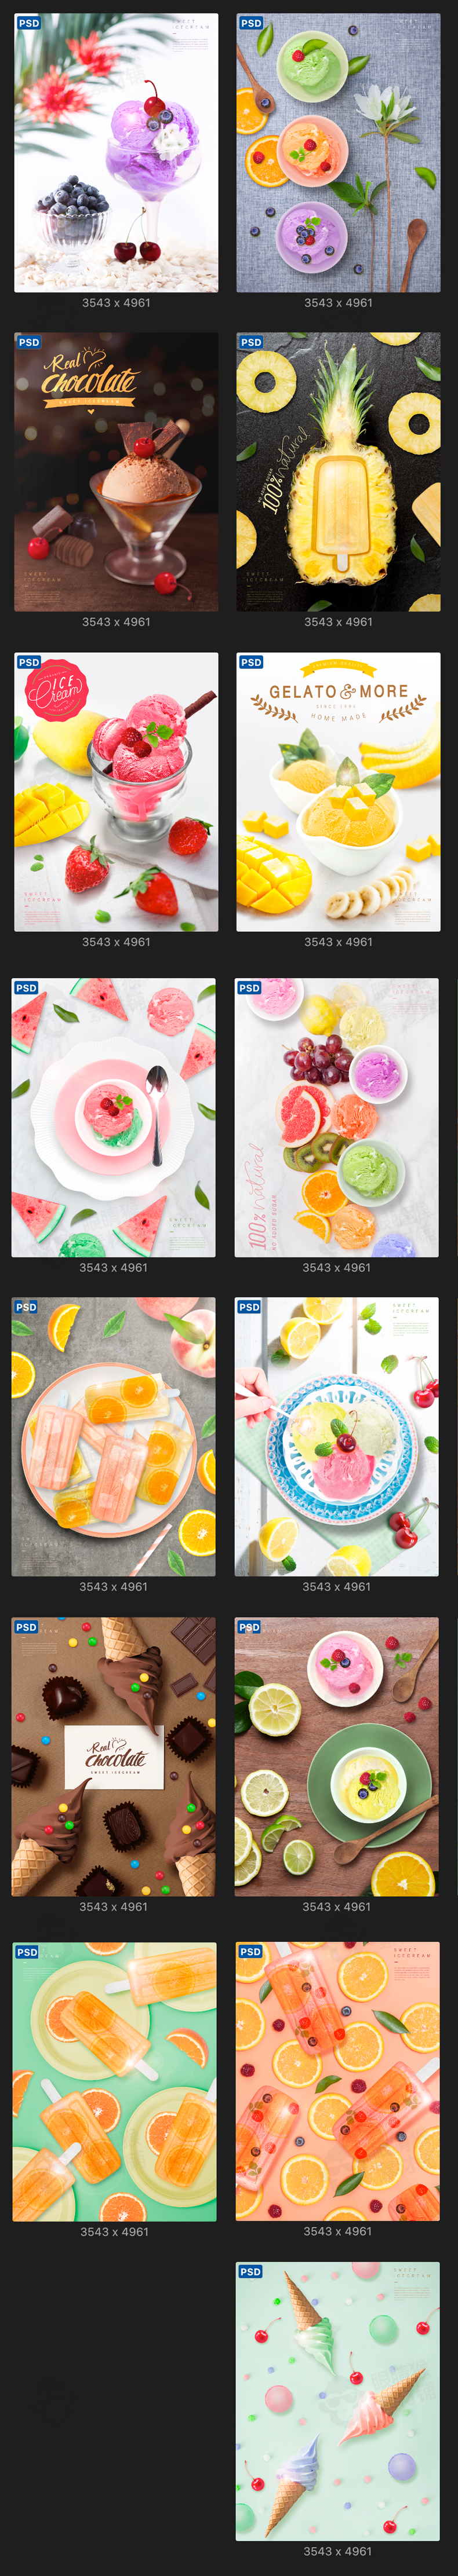 夏季水果菠萝西瓜果汁饮料奶茶美食餐饮甜品海报PSD模板广告素材-海报素材-到位啦UI